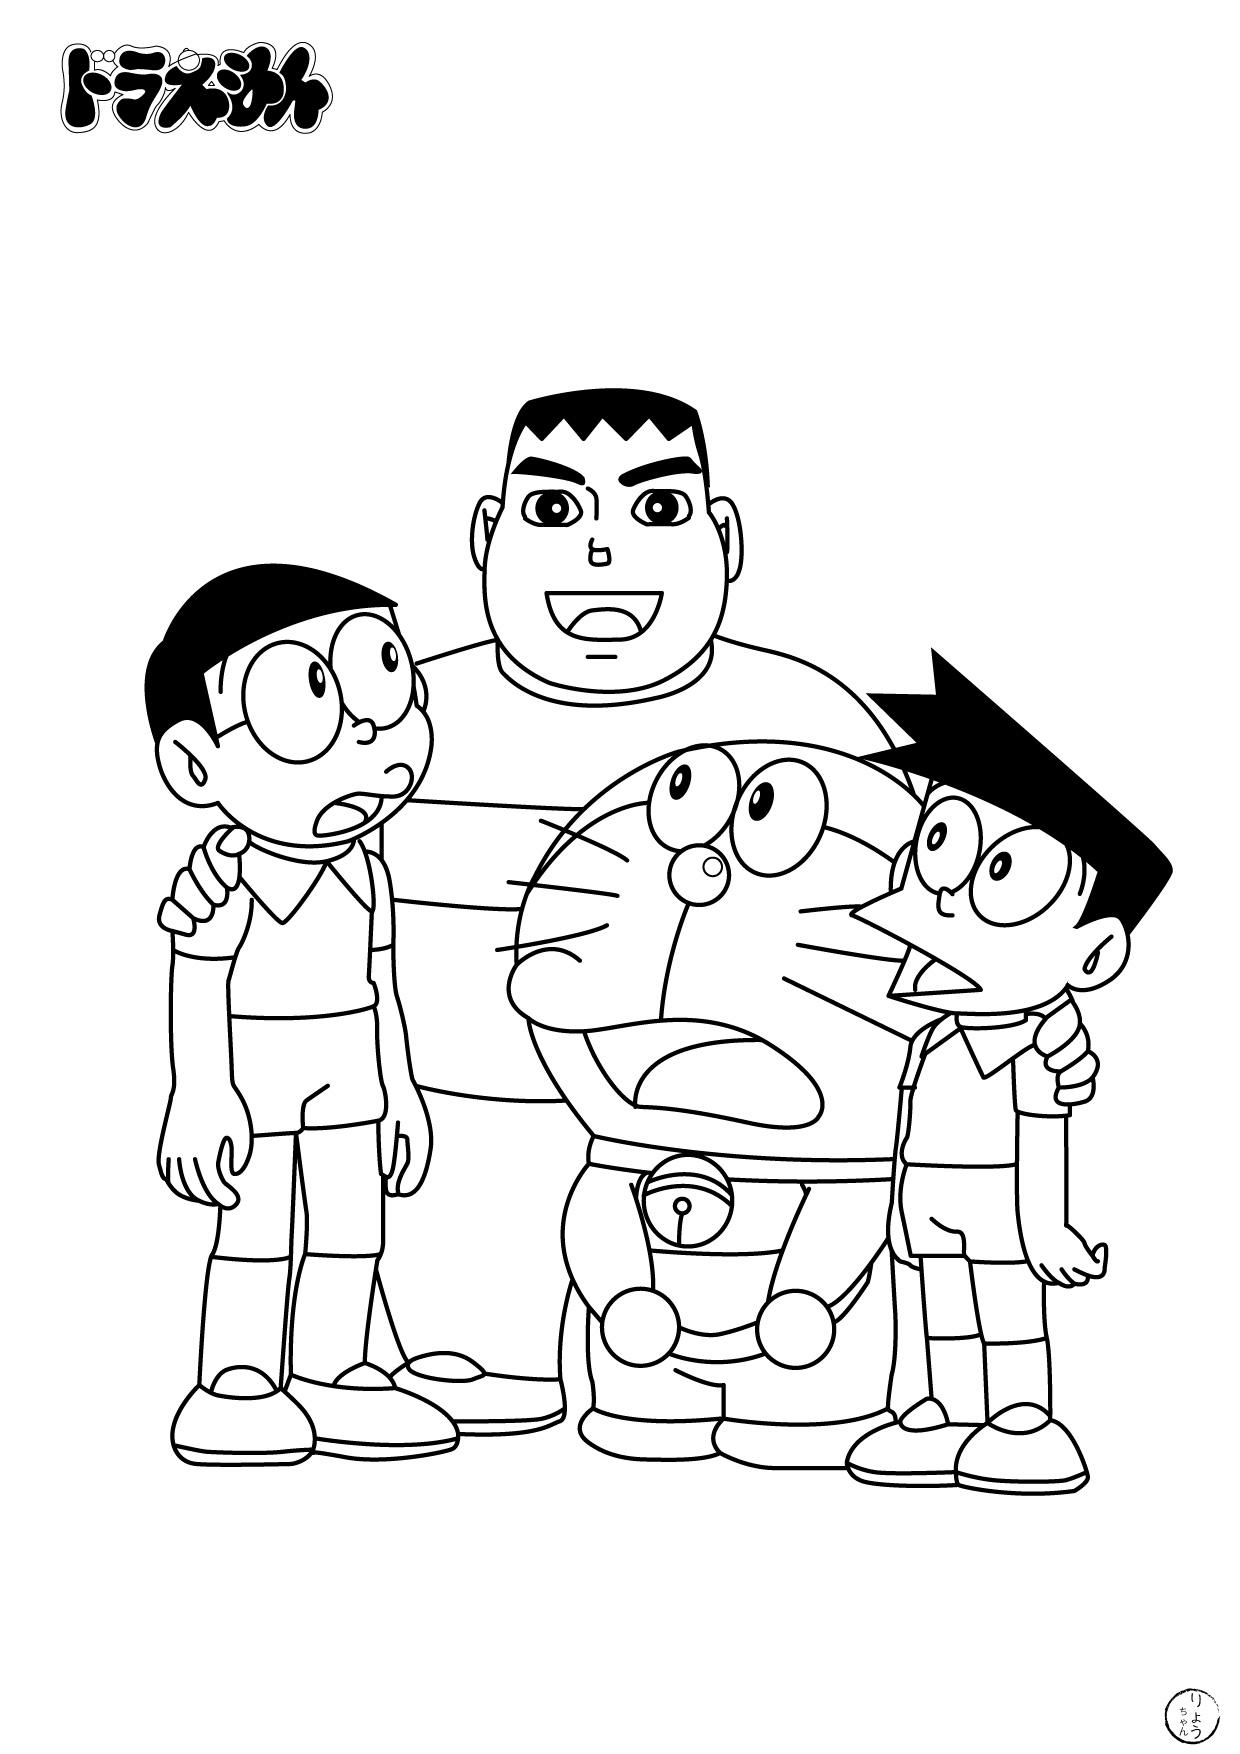 Tranh tô màu Doremon, Nobita và những người bạn